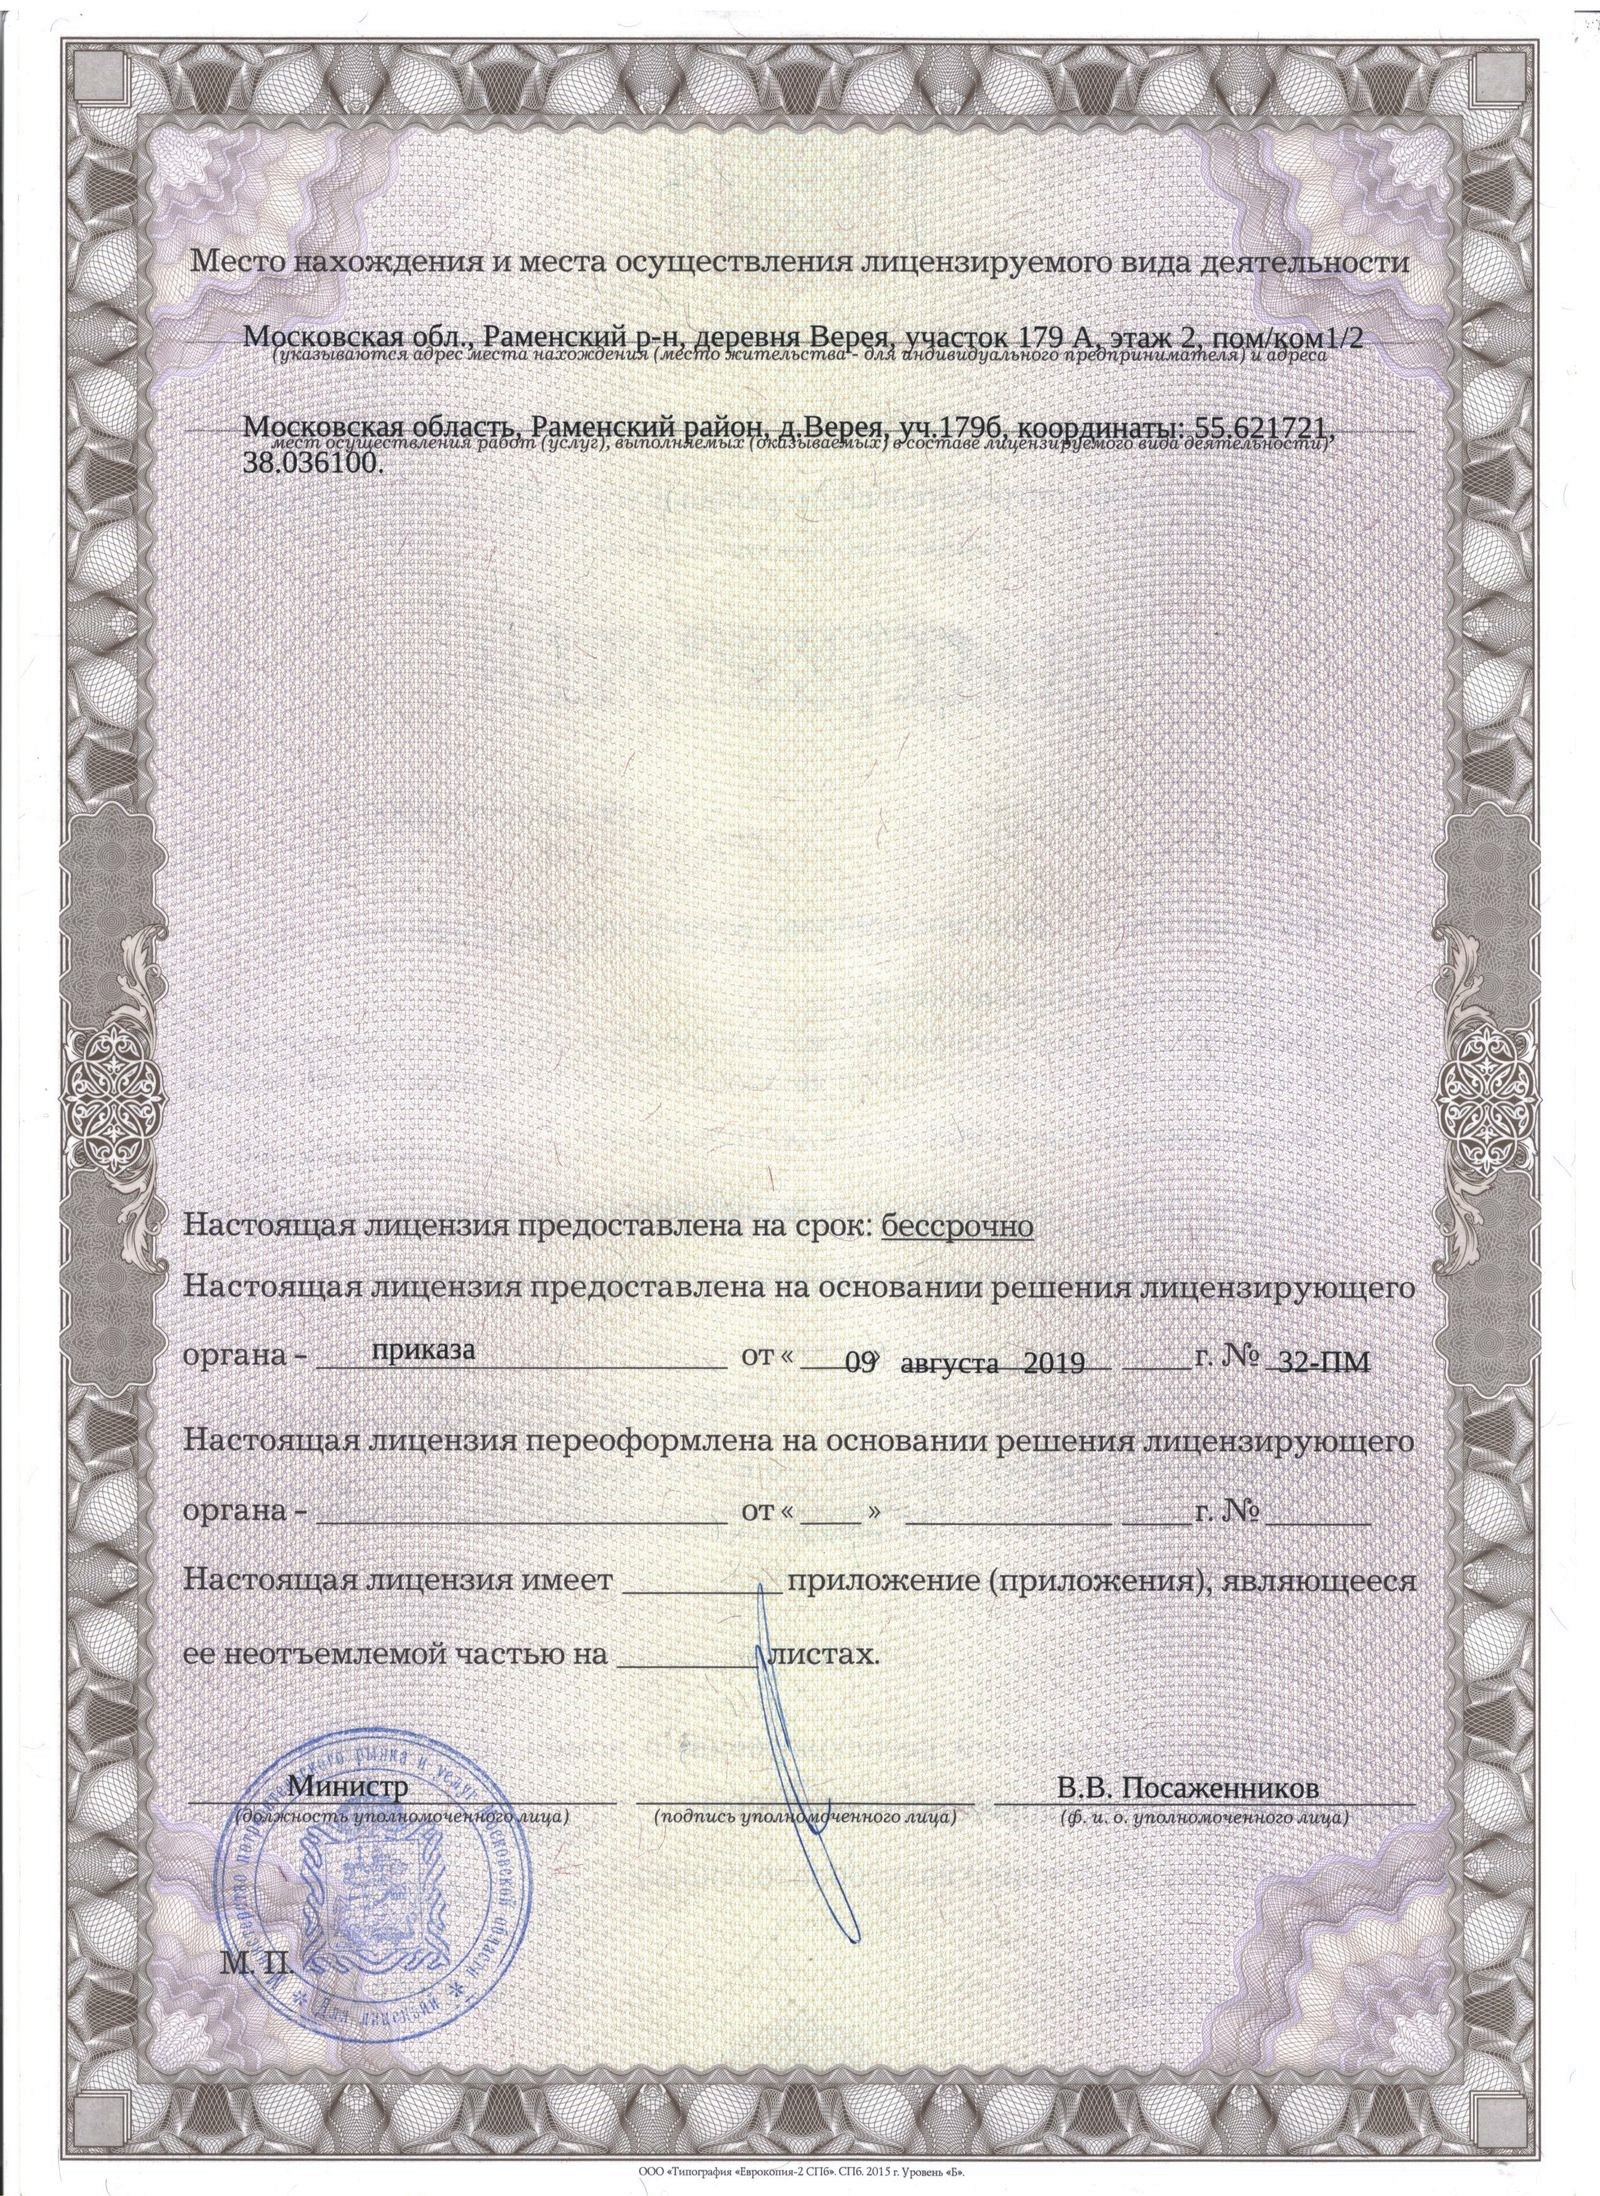 Наша лицензия на осуществление деятельности по переработке лома. Страница 2